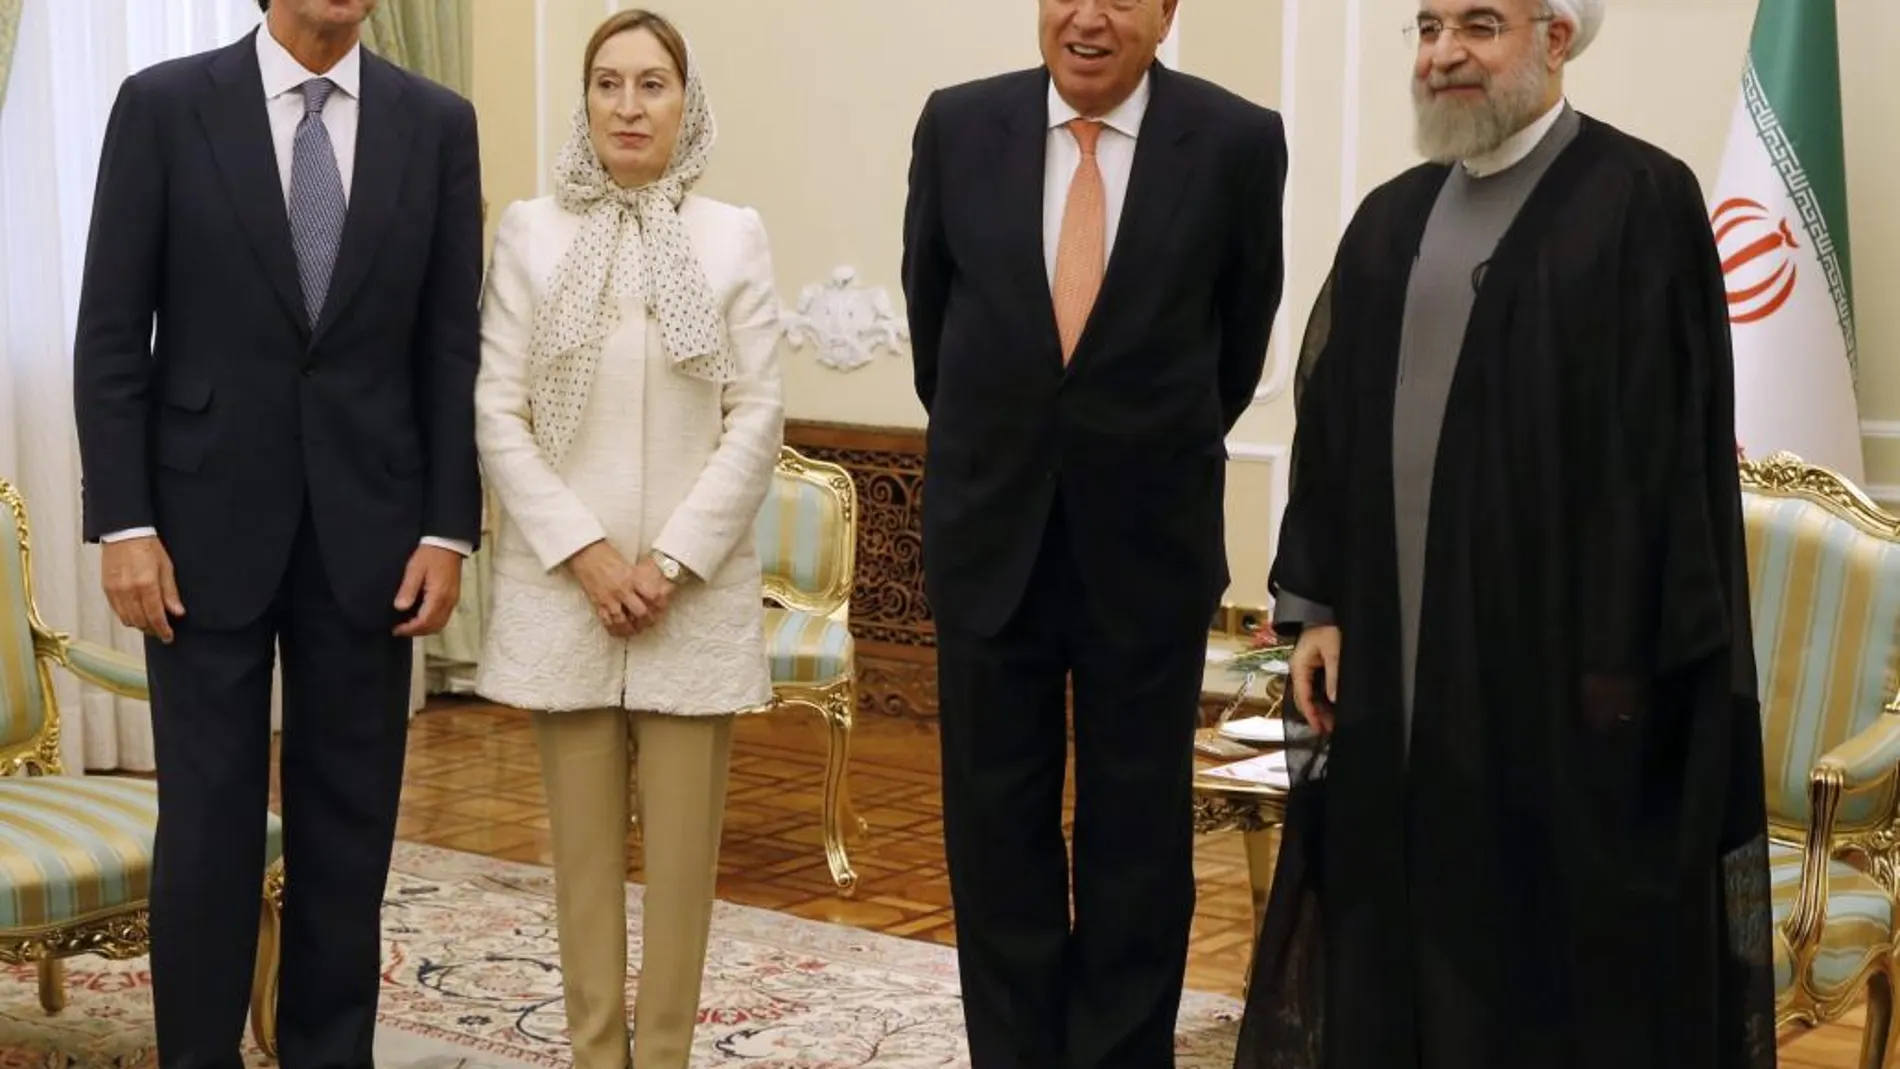 De izquierda a derecha, José Manuel Soria, Ana Pastor, José Manuel García-Margallo y el presidente iraní, Hassan Rohaní, hoy en Teherán.